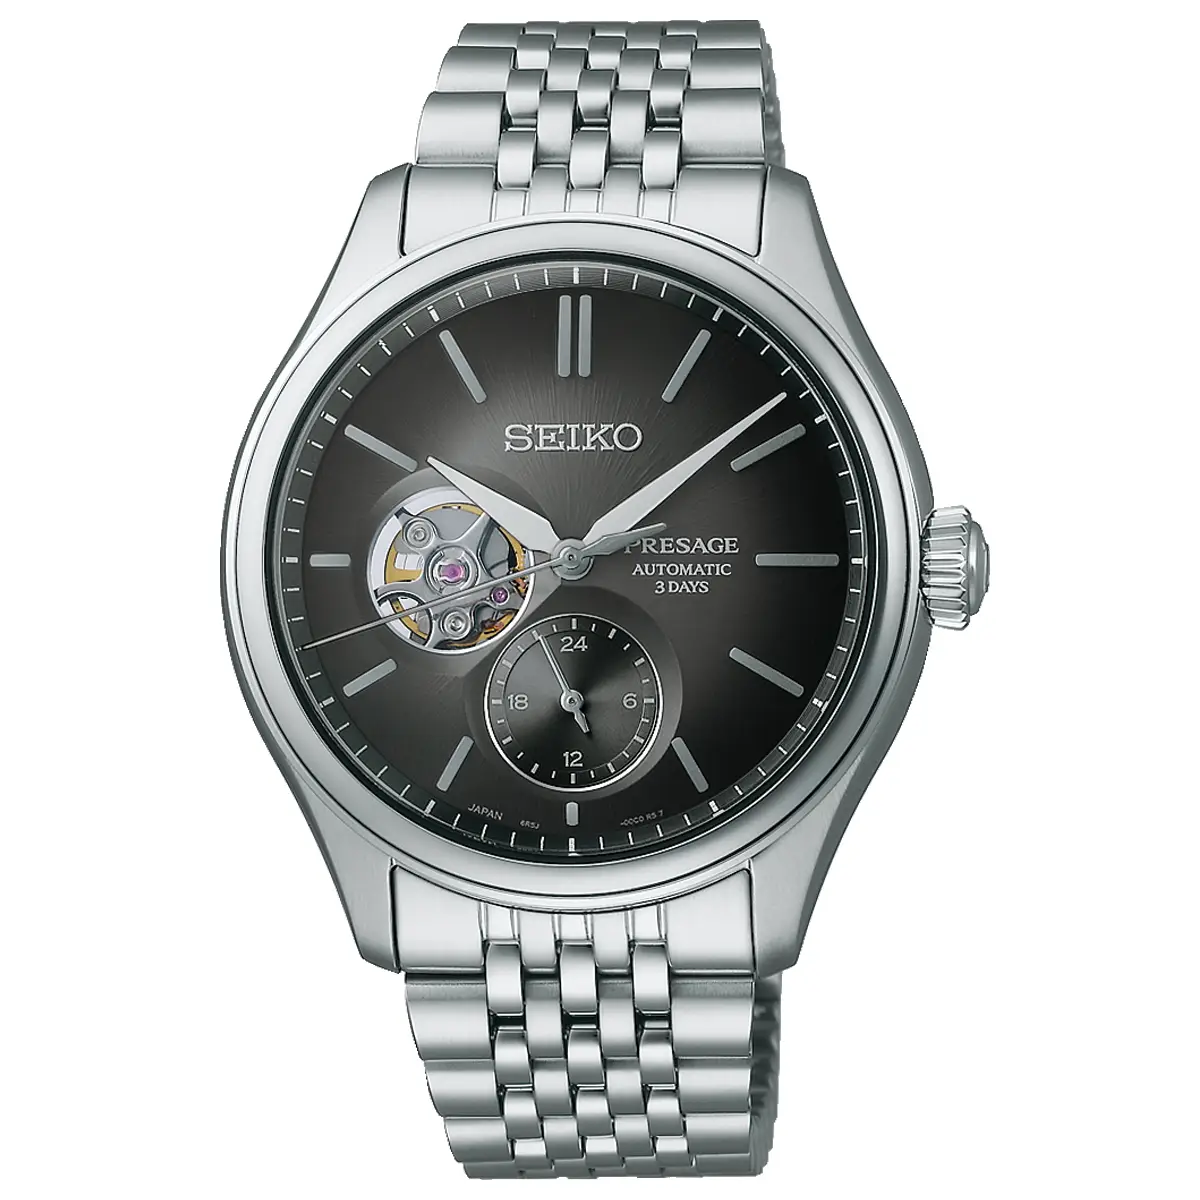 Đồng hồ Seiko Presage Classic Series Sumi-Iro Open Heart SARJ009 (SPB471) với mặt số màu đen. Dây đeo bằng thép. Thân vỏ bằng thép.